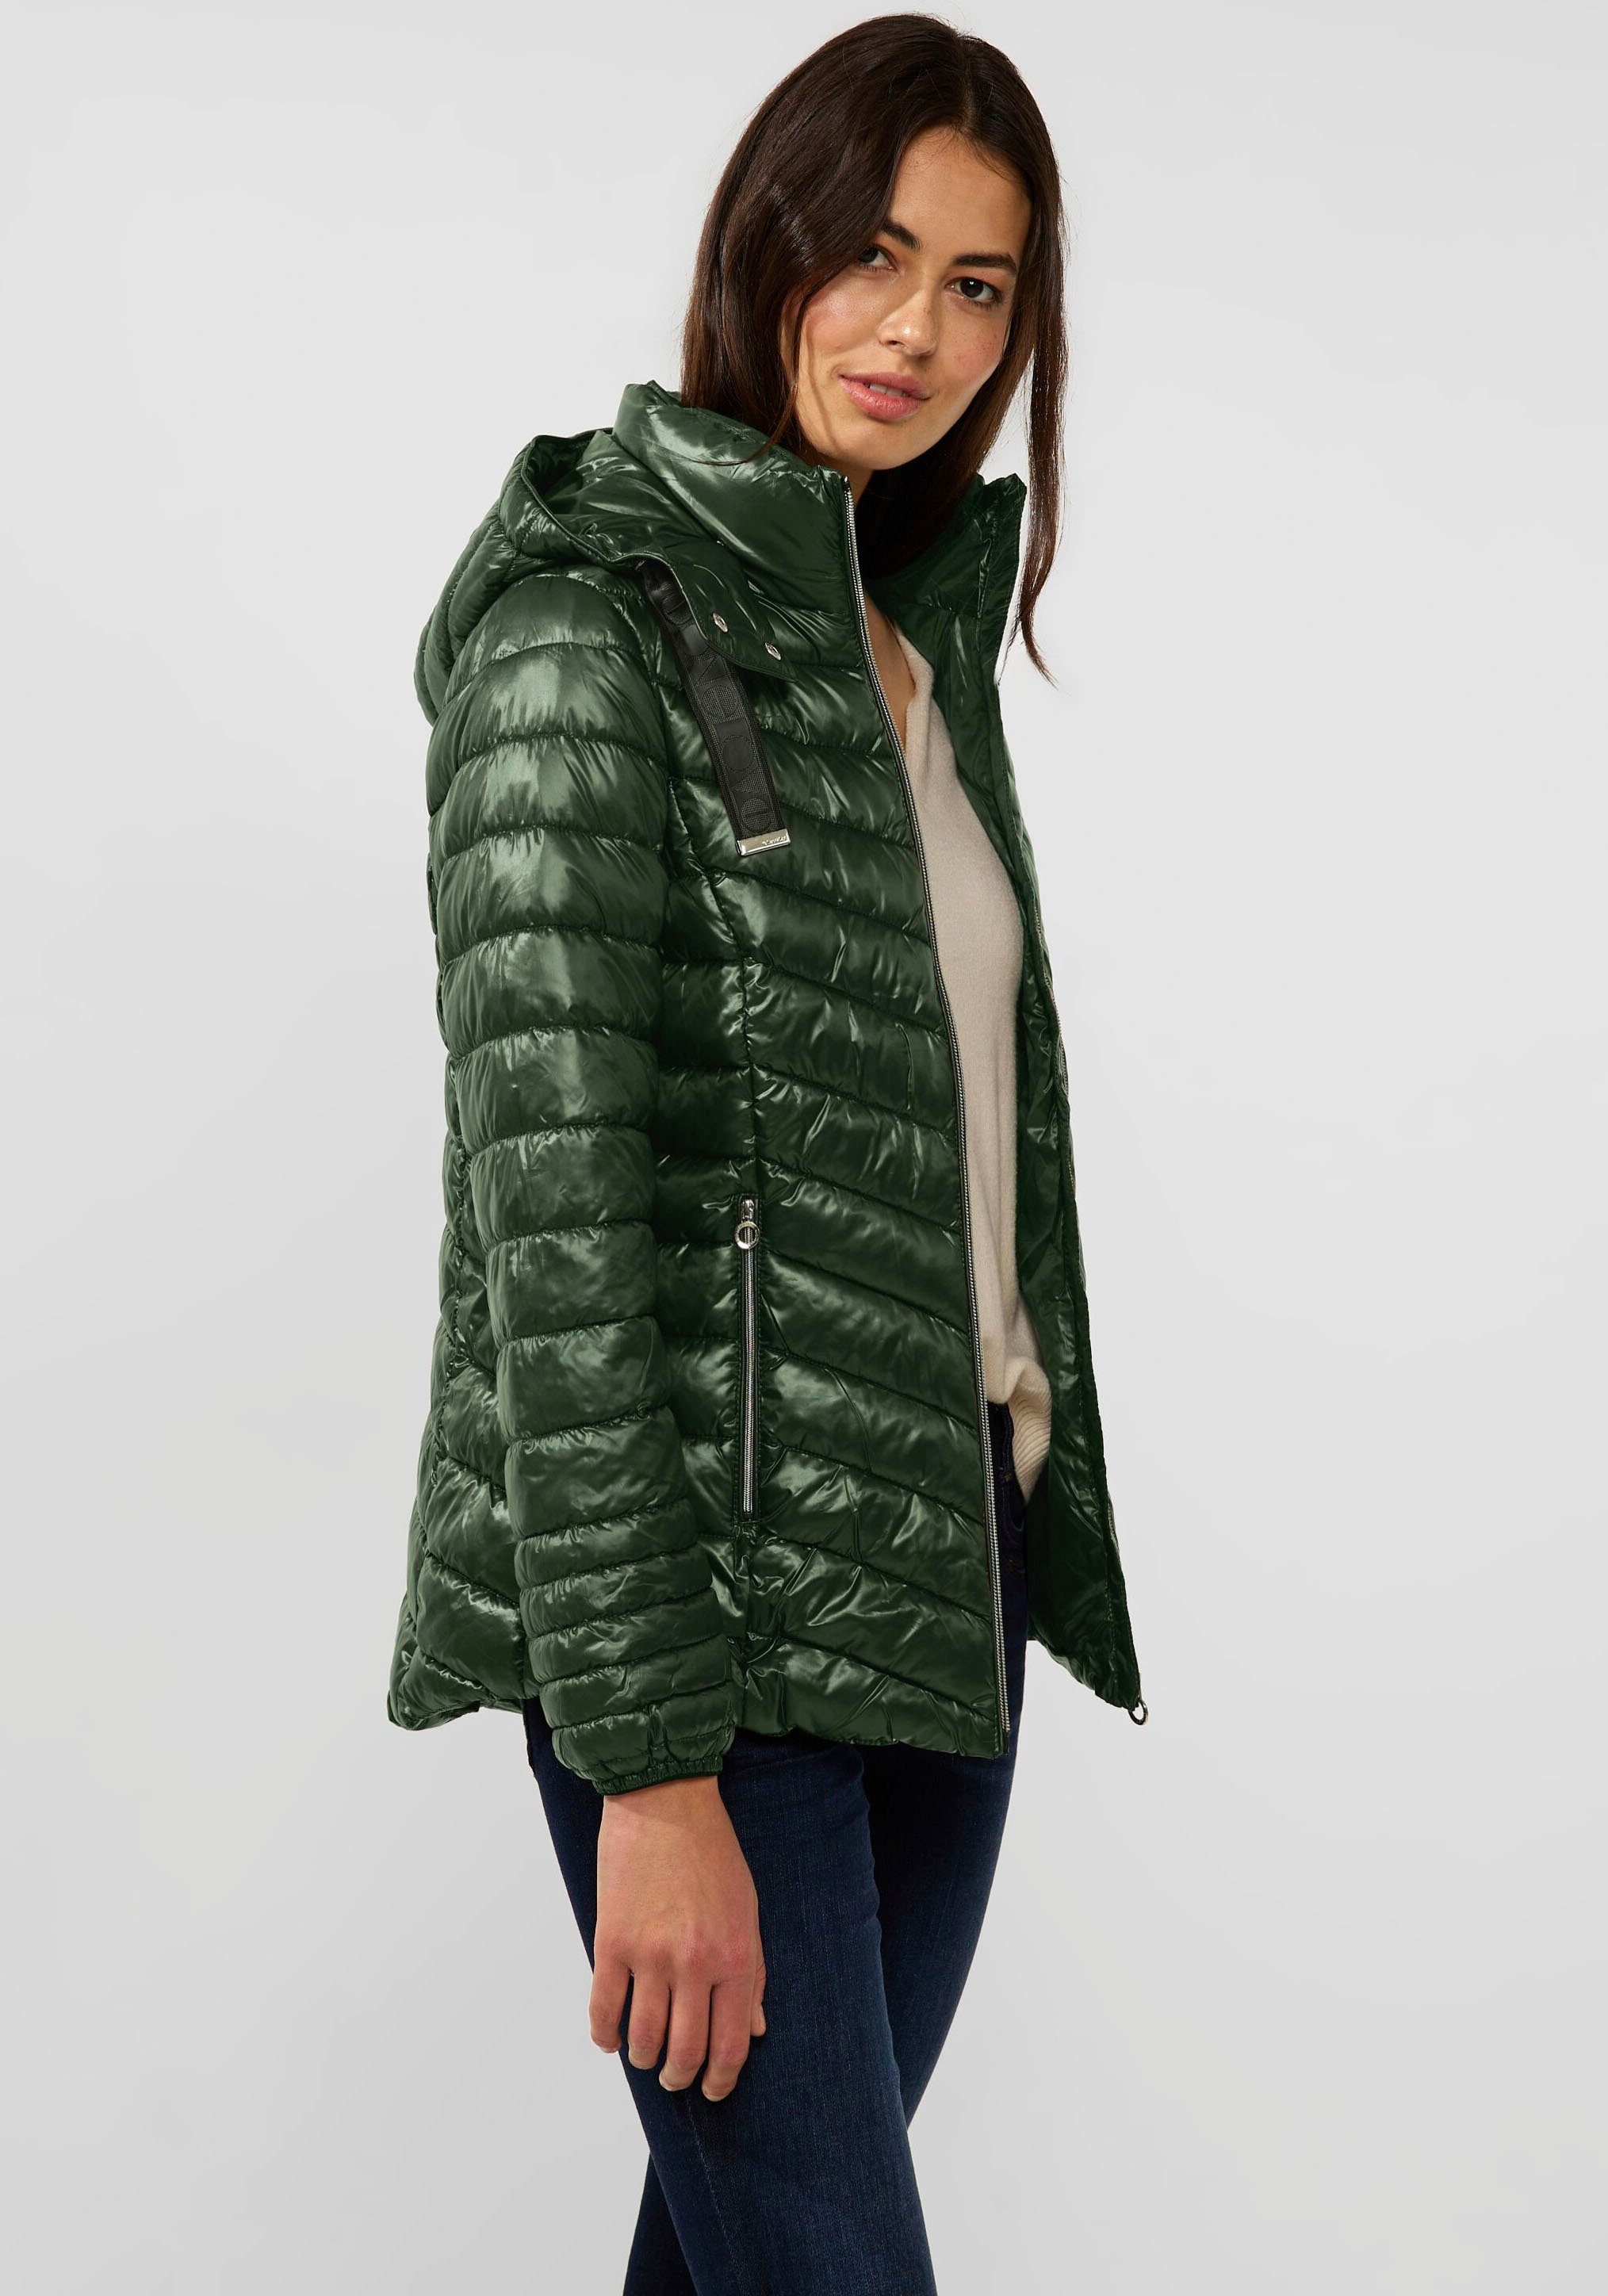 für Goose online | Damen OTTO kaufen Jacken Green